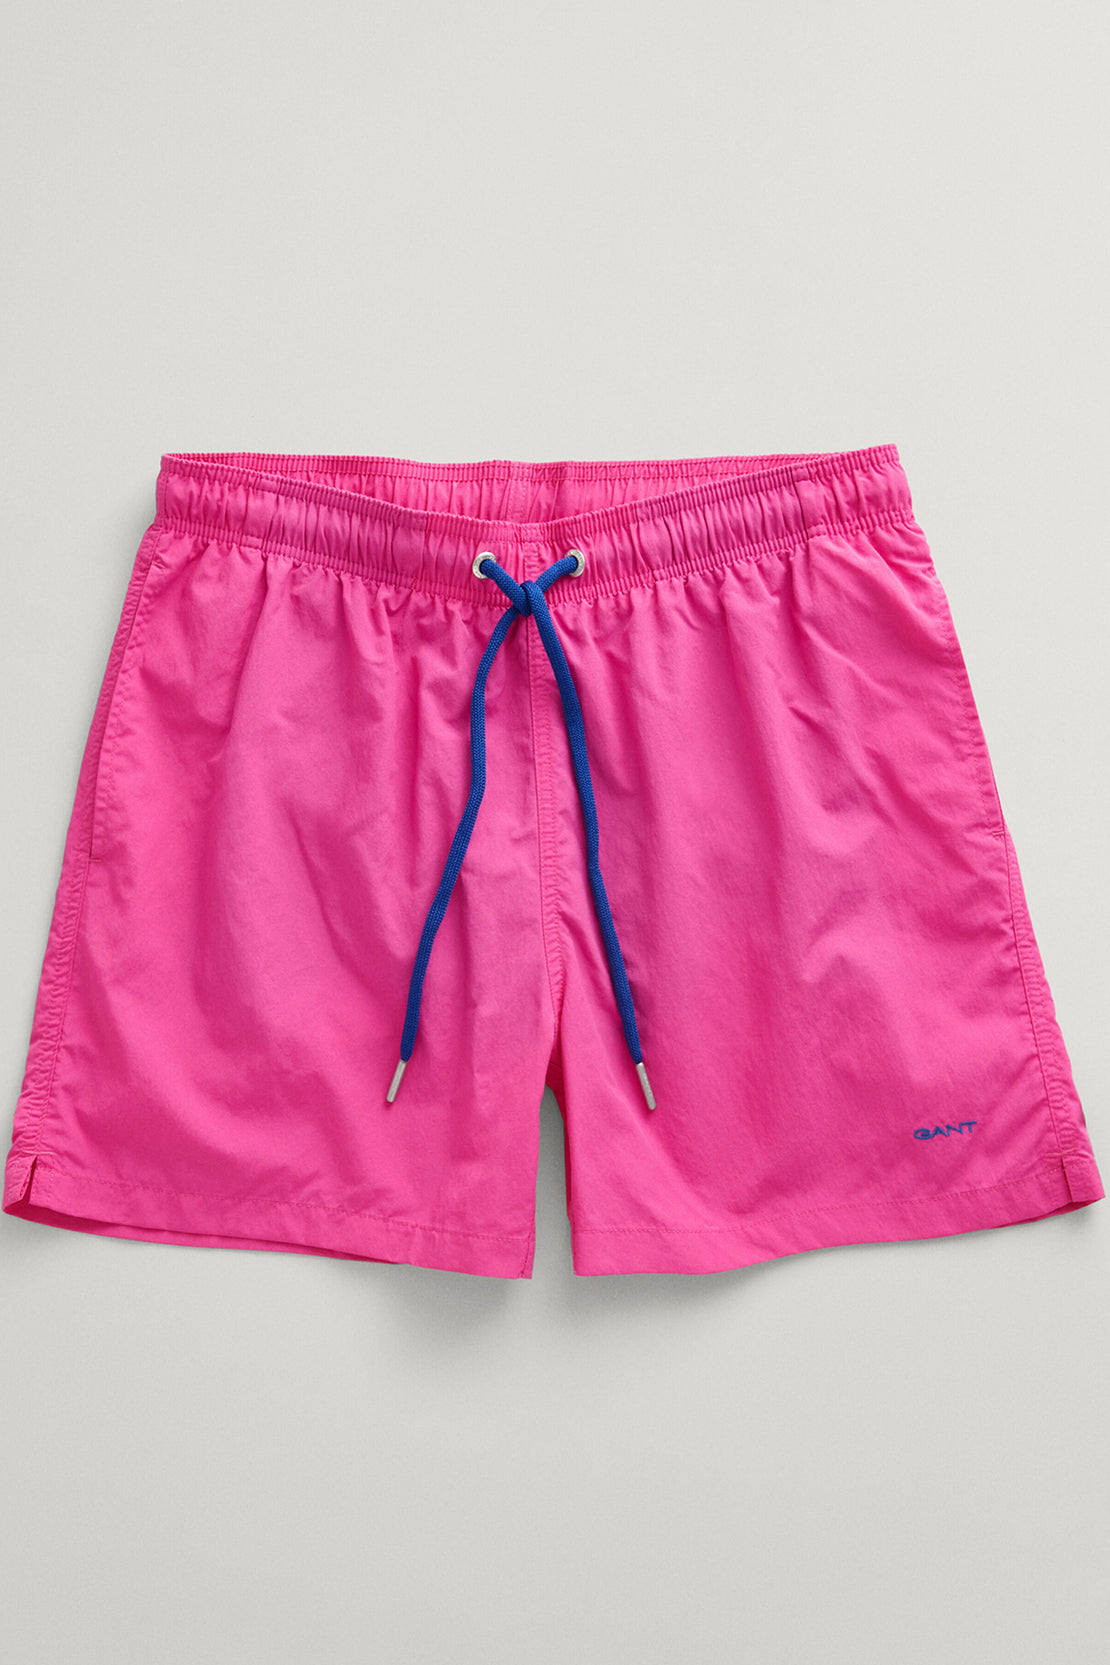 GANT - Swim Shorts in Bold Violet 920006000 546